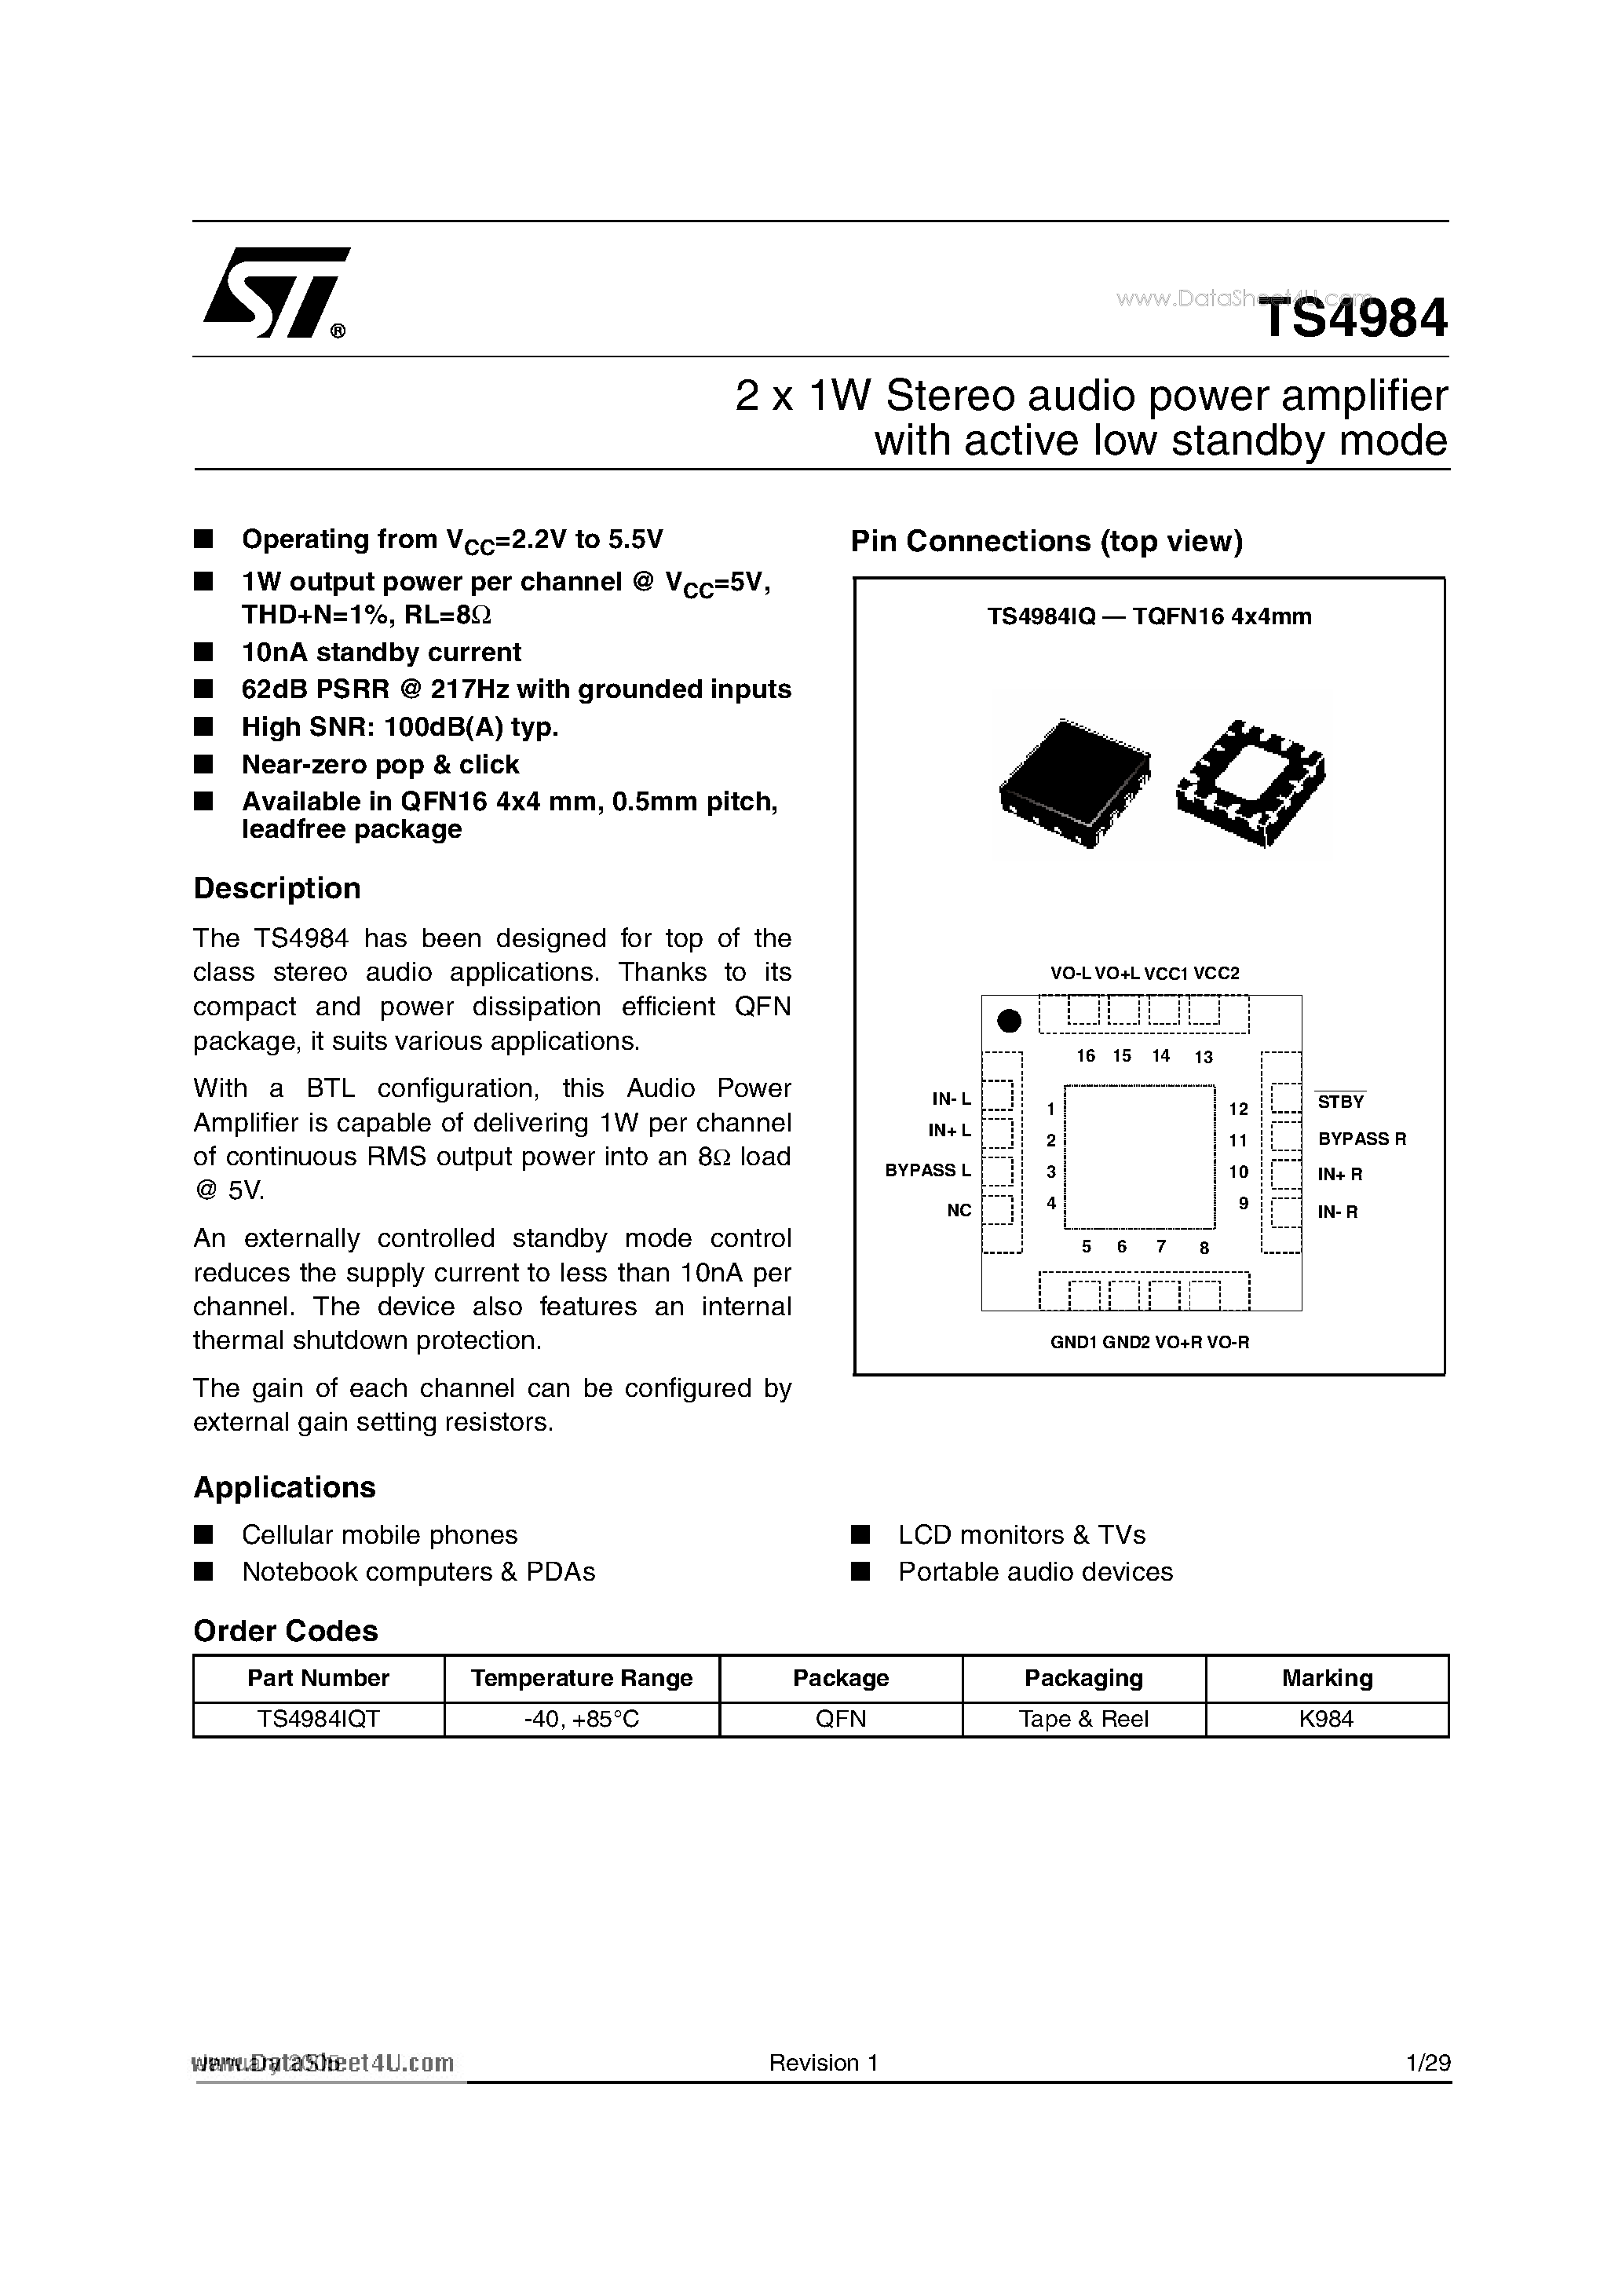 Даташит TS4984 - 2 x 1W Stereo audio power amplifier страница 1